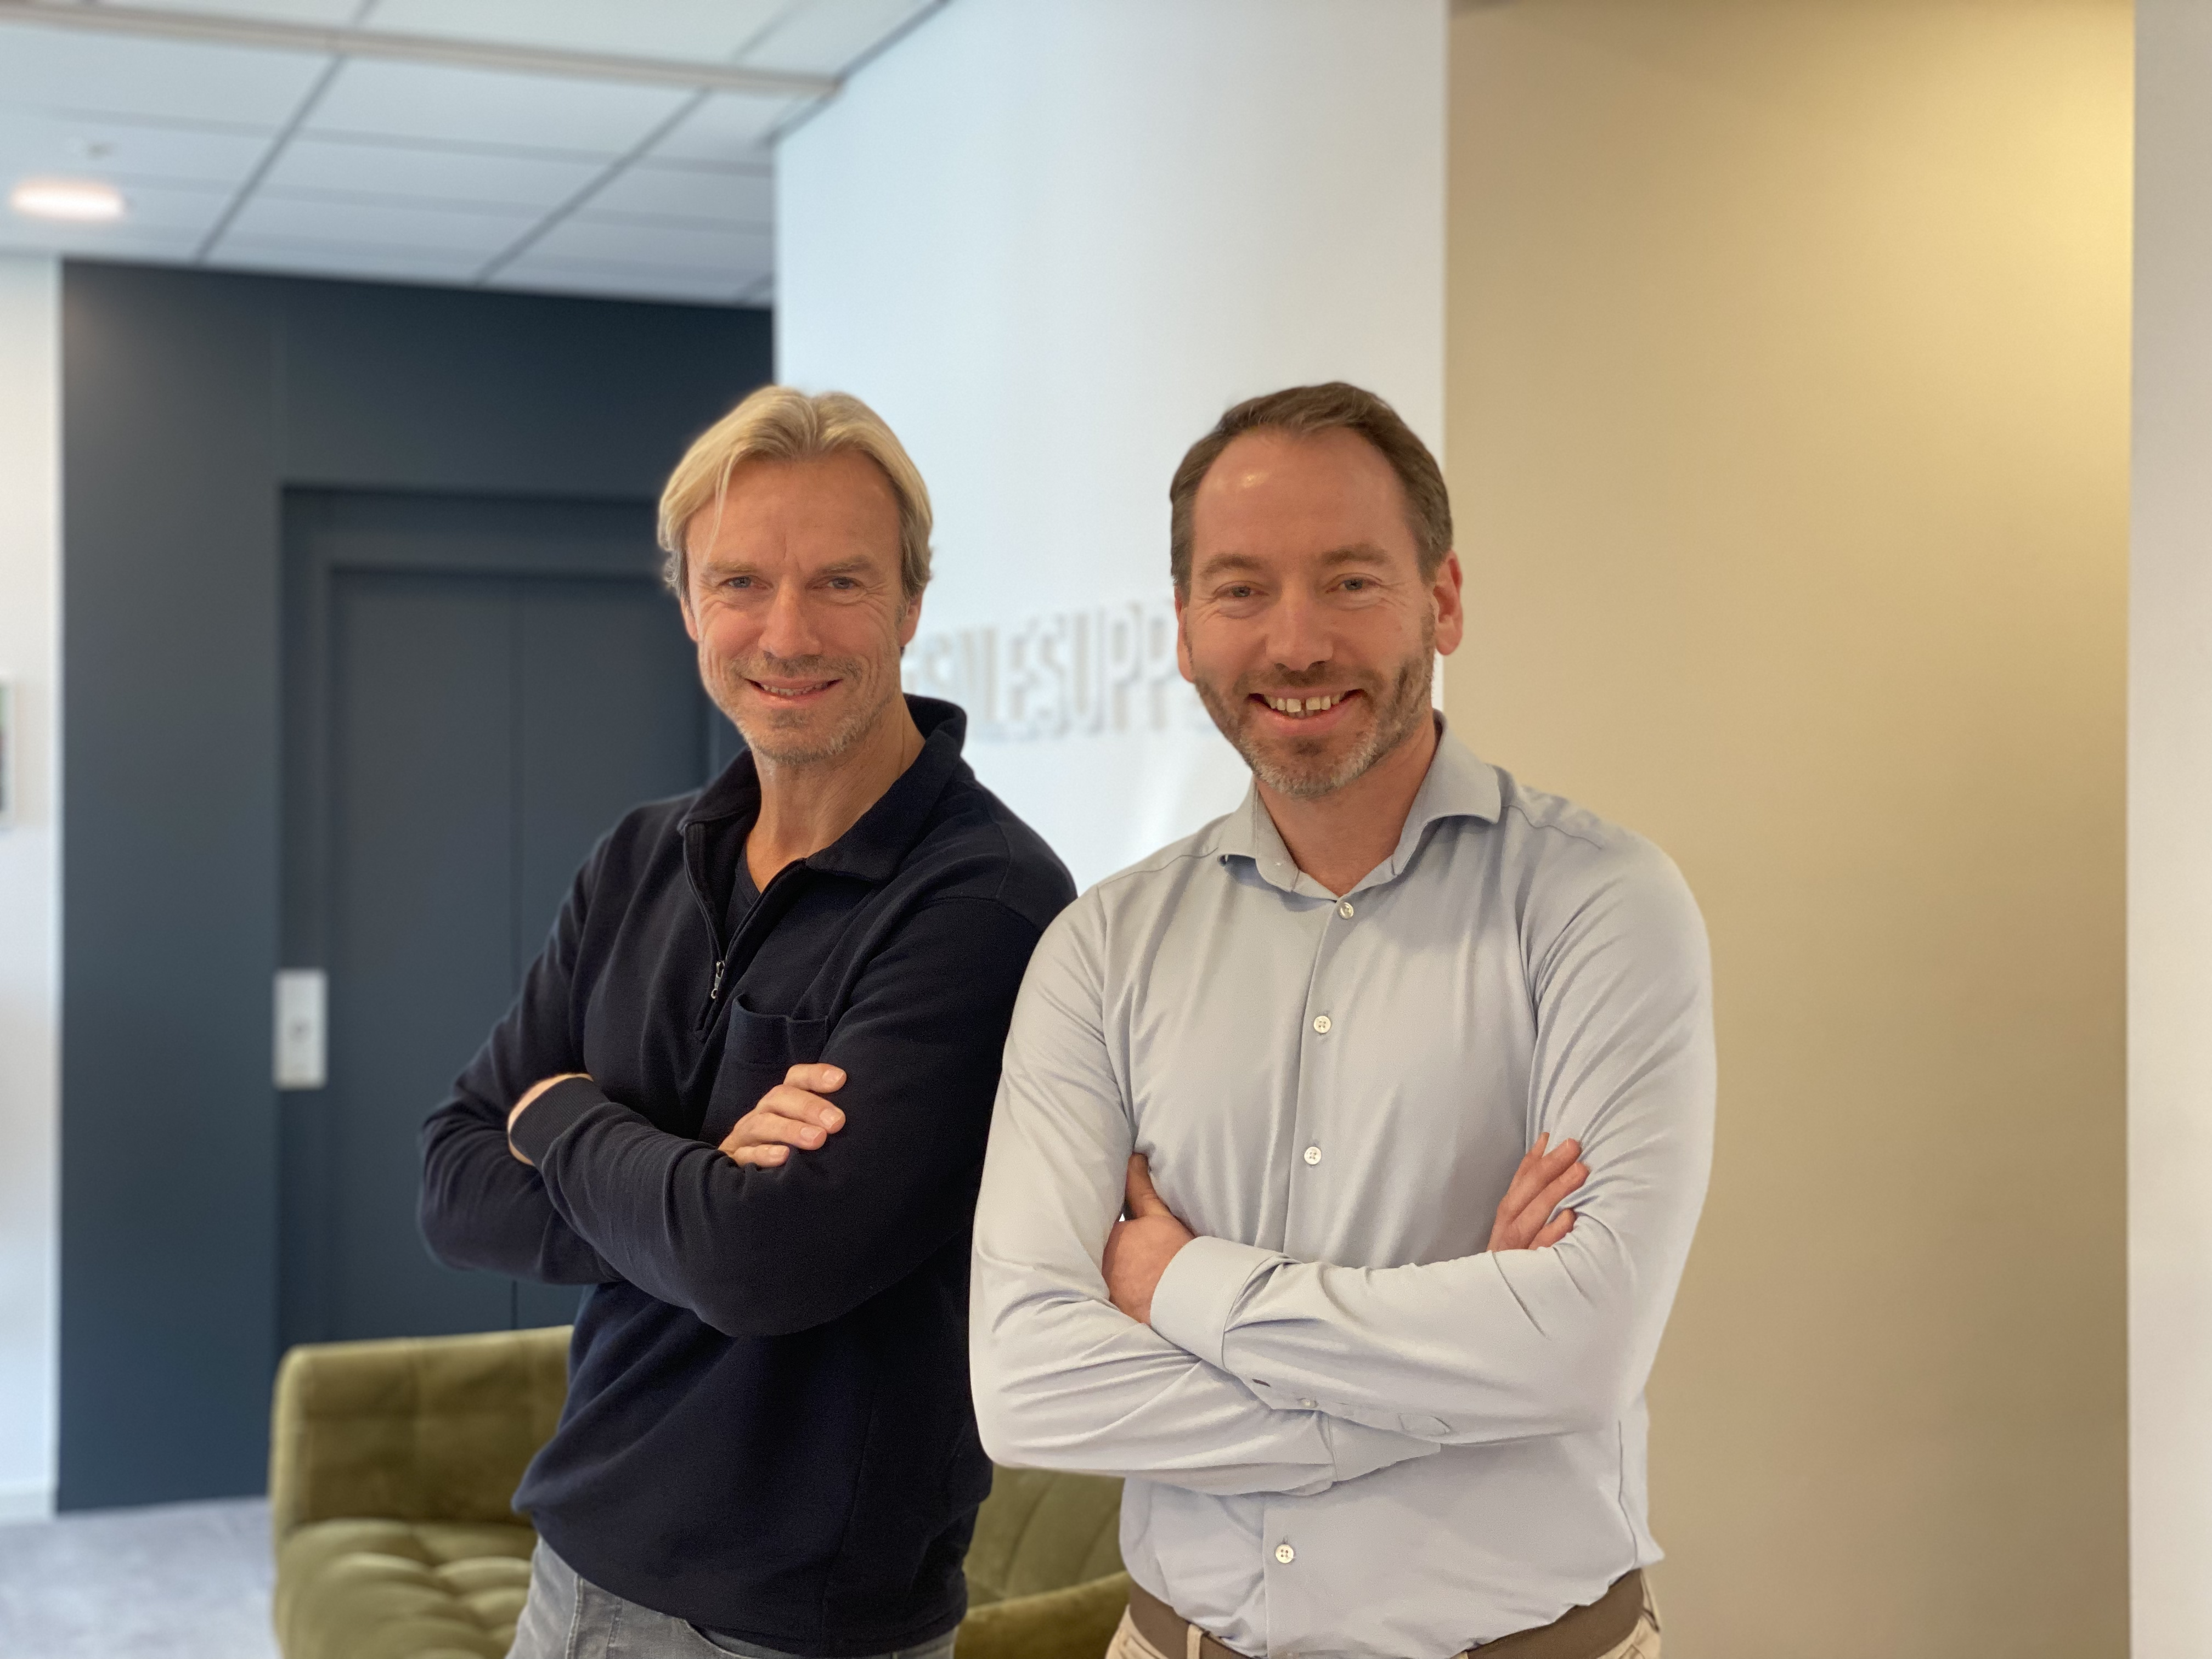 Jeroen Leenders and Tim Oosterbaan - co-founders of Salesupply